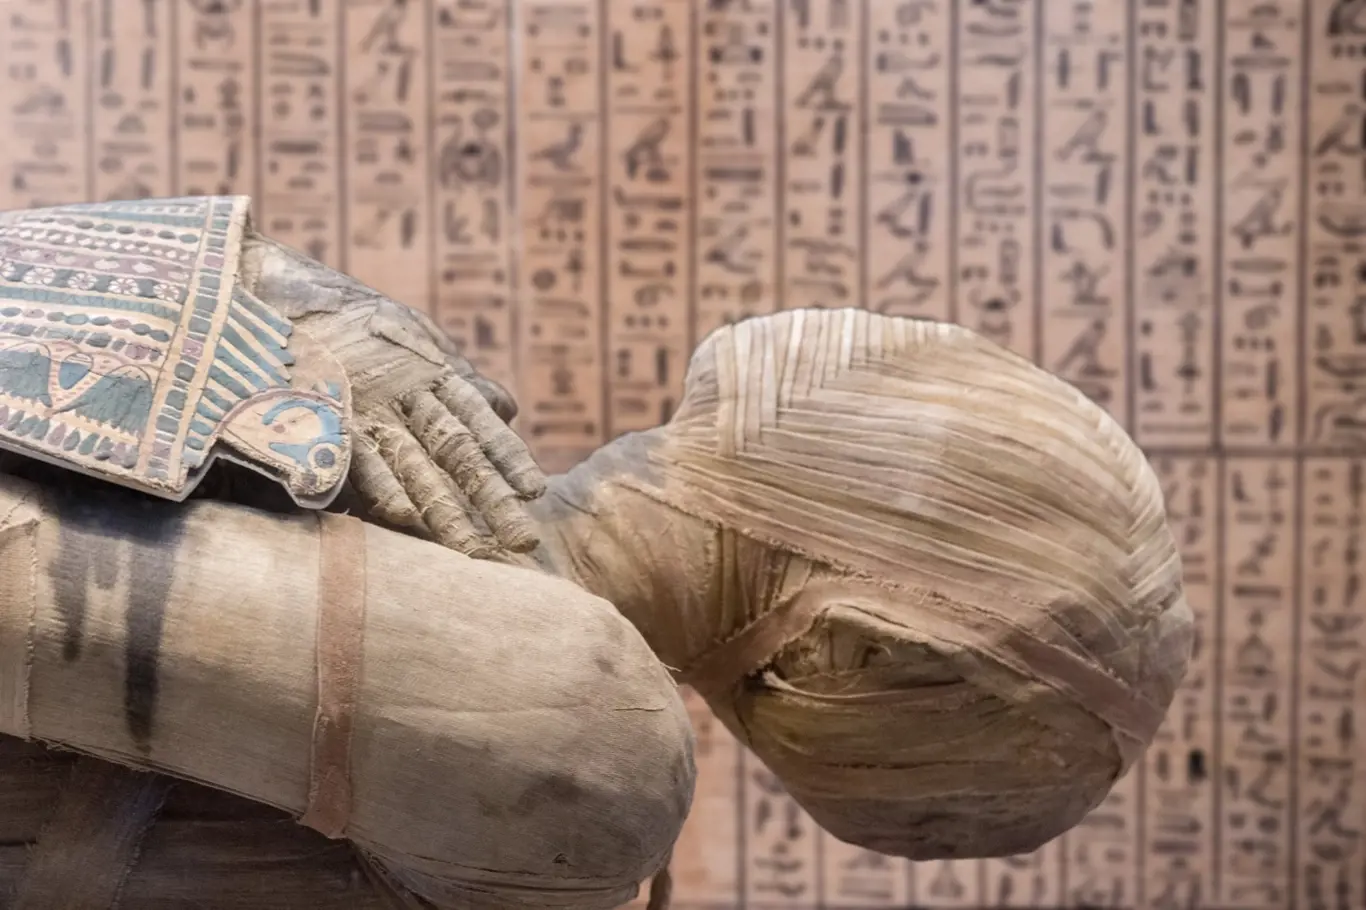 Rekonstrukce tváře egyptské mumie